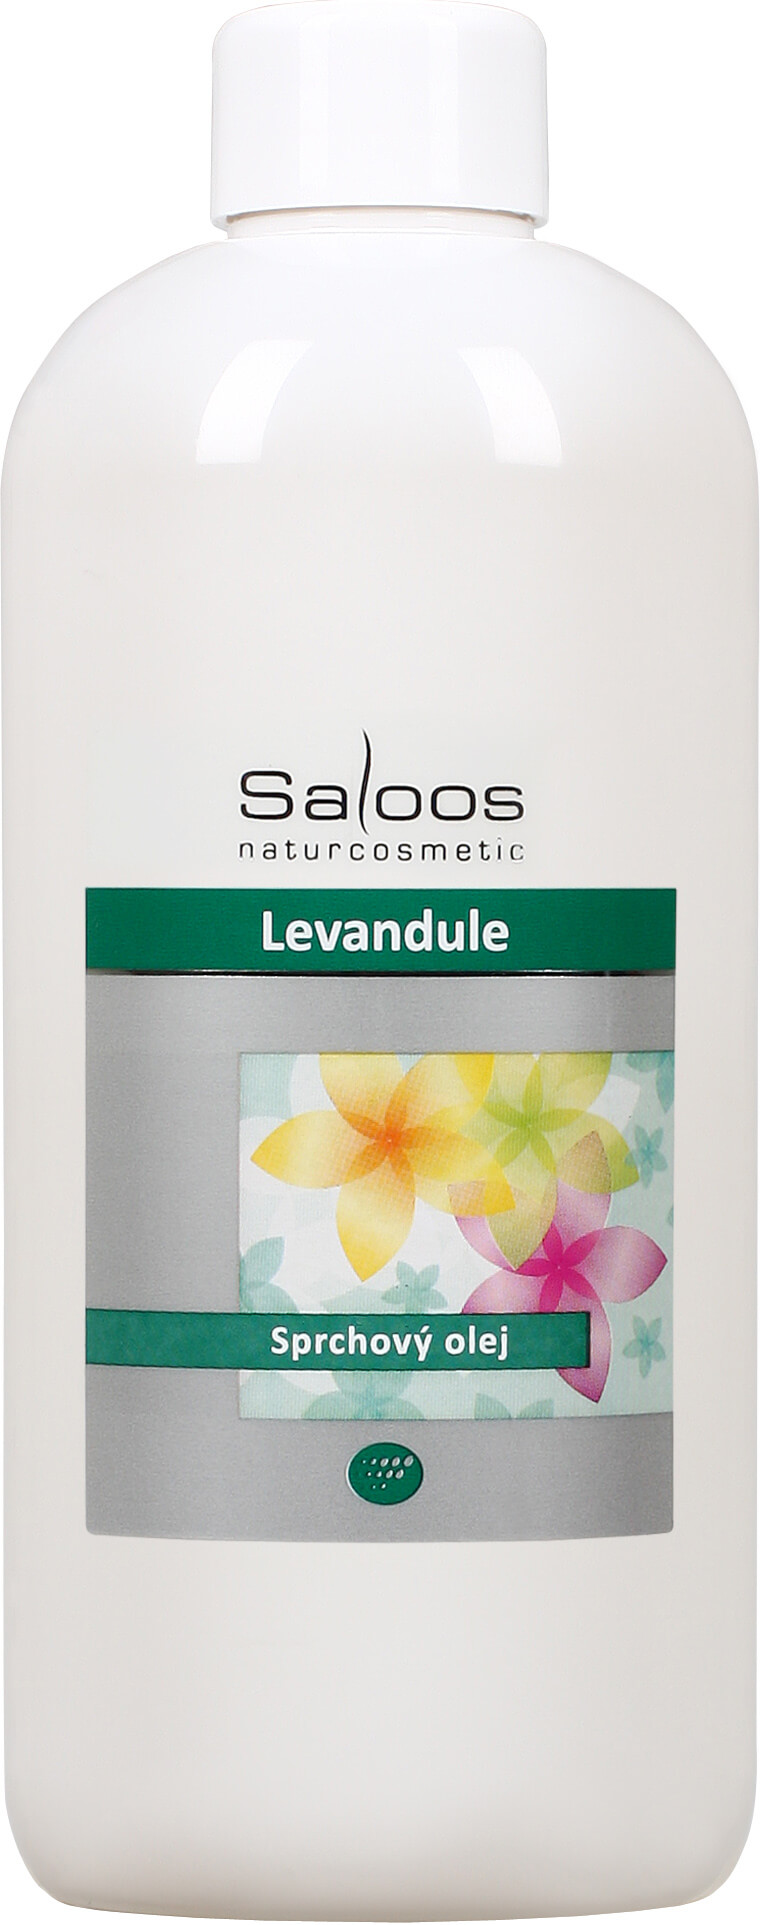 Zobrazit detail výrobku Saloos Sprchový olej - Levandule 250 ml + 2 měsíce na vrácení zboží